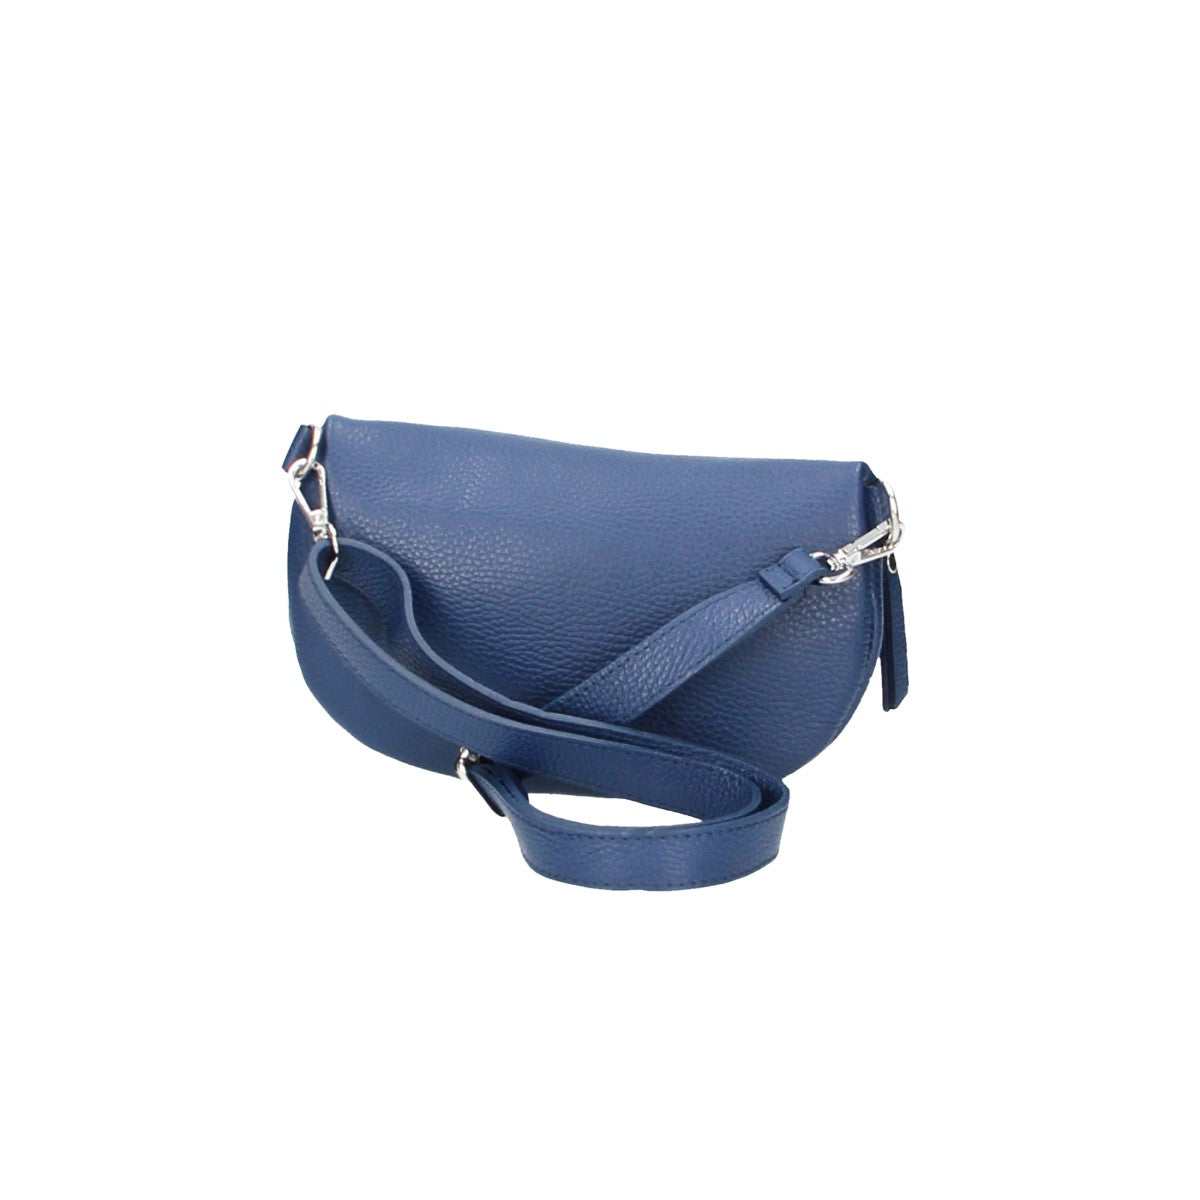 Bodybag|Gürteltasche in Blau|Marine aus Leder